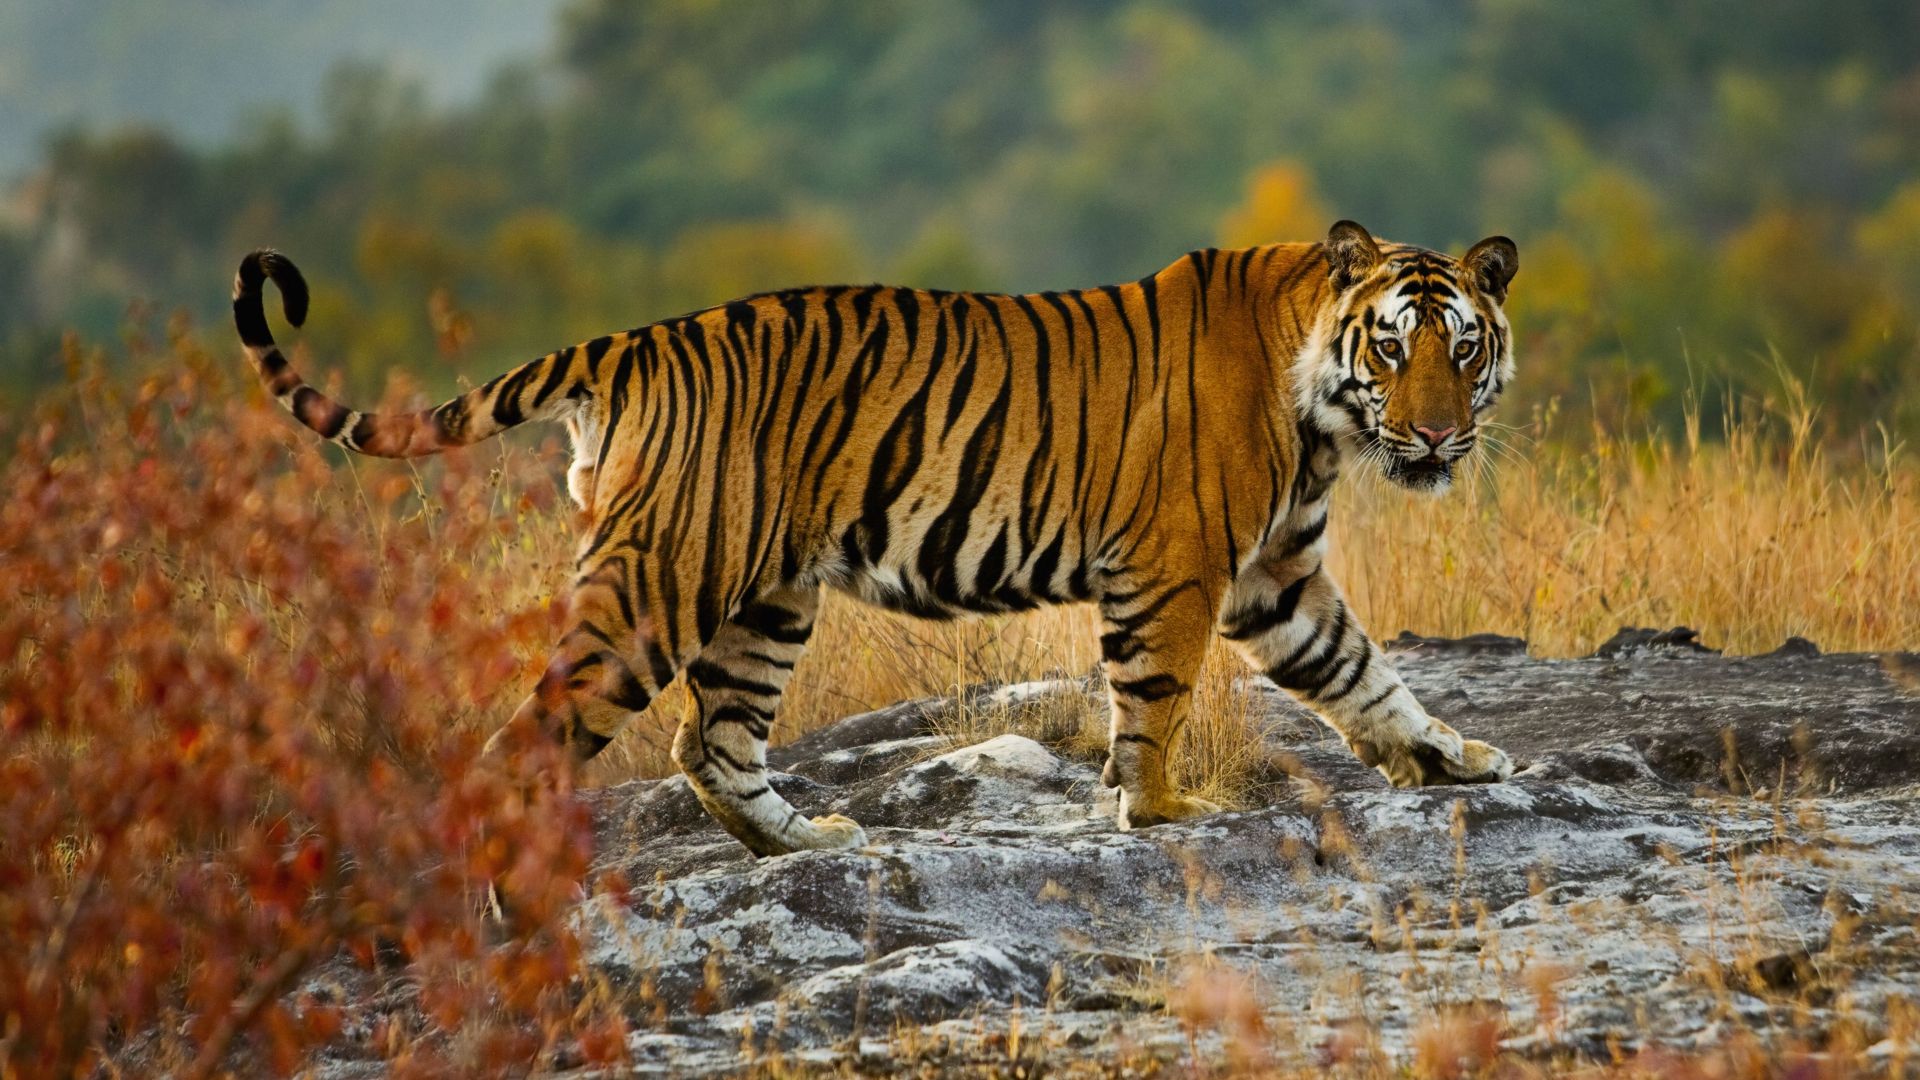 Tiger16685